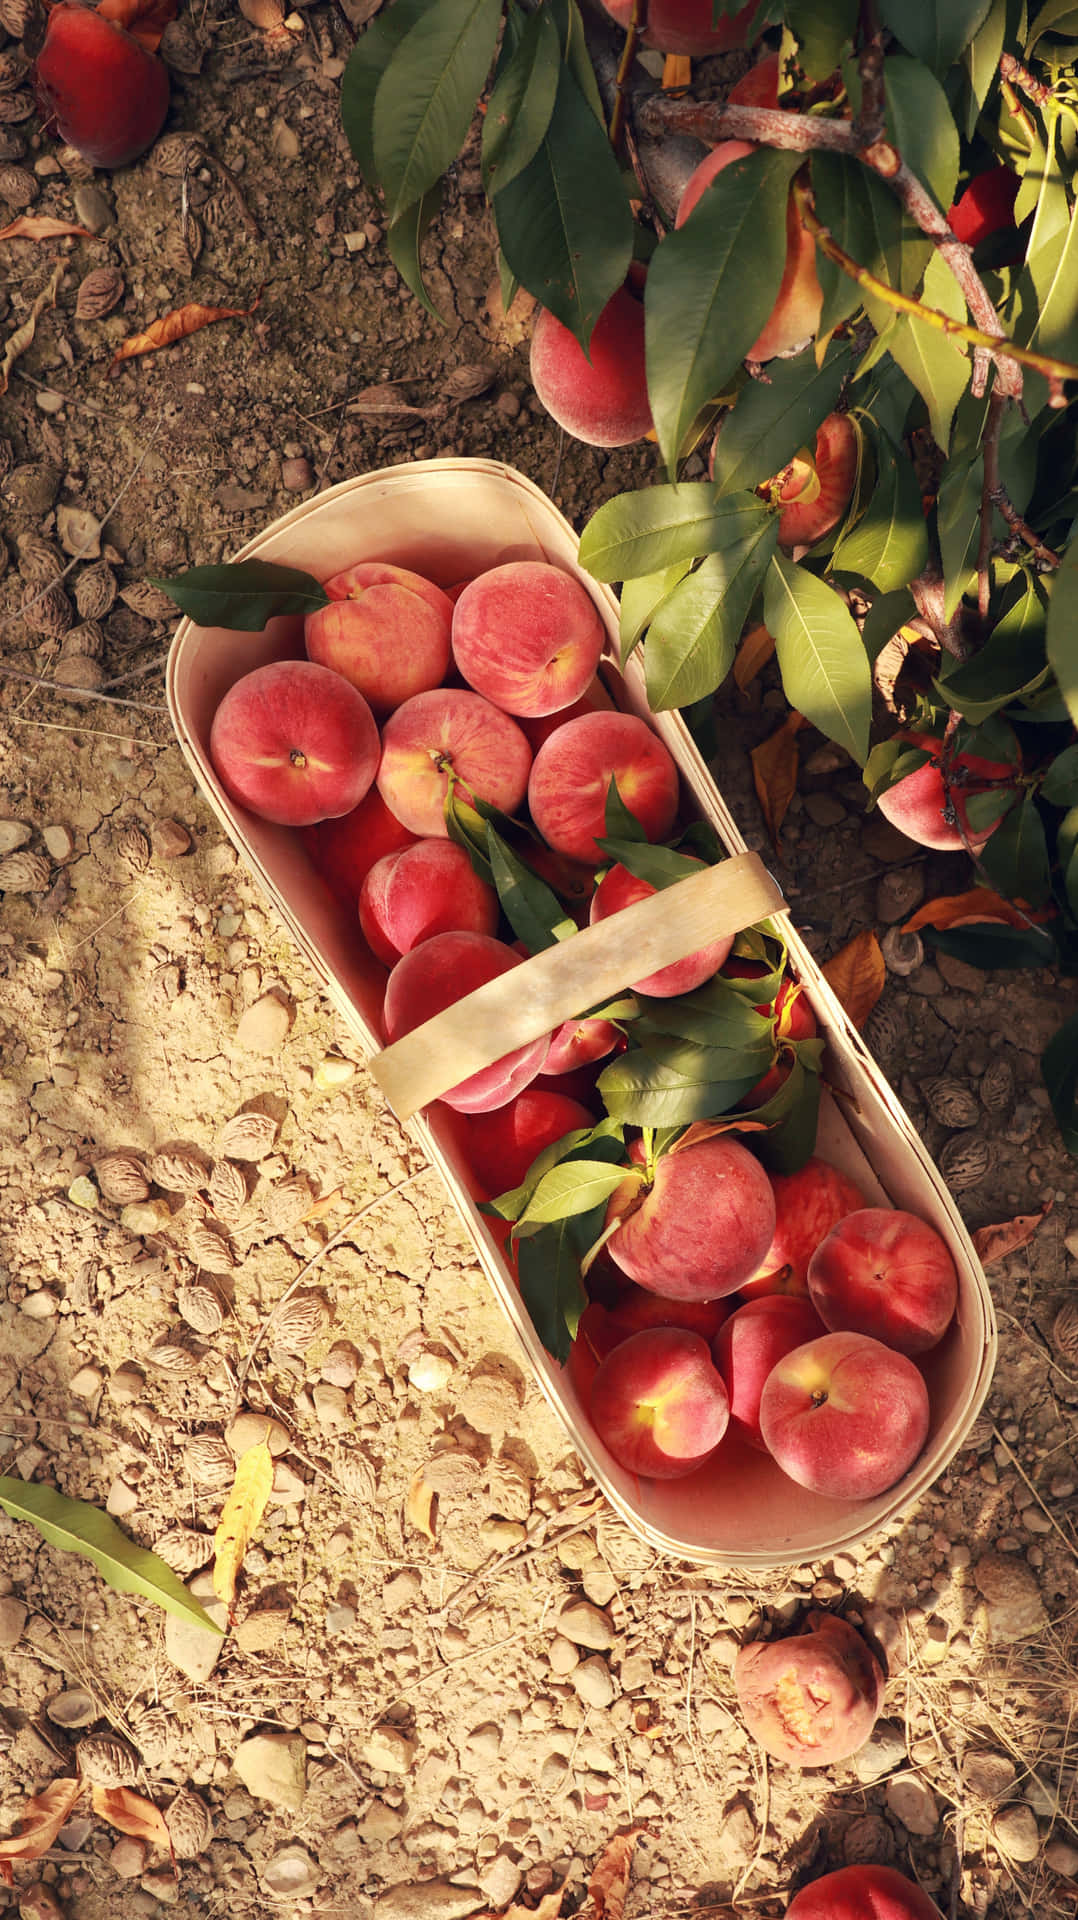 Enjoy a warm summer day with a juicy peach!